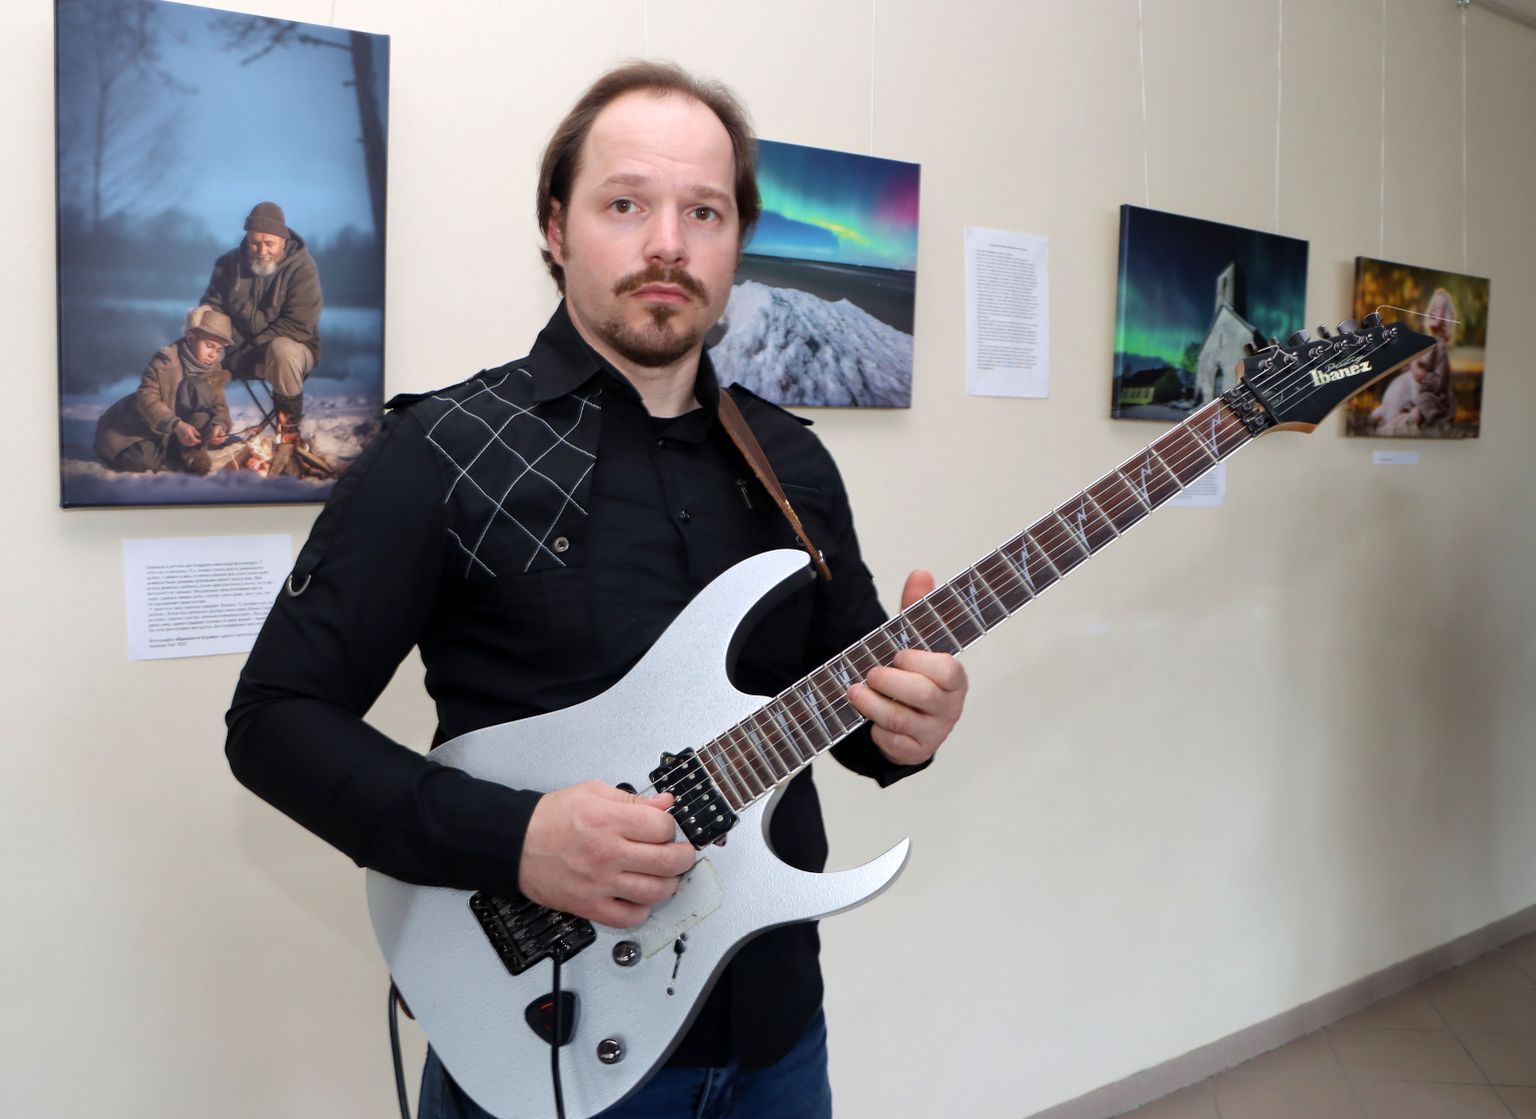 Aleksandr Kurnossovi käes kõlab kitarr imeliselt, tema fotokaamera aga jäädvustab muinasjutulisi looduspilte.